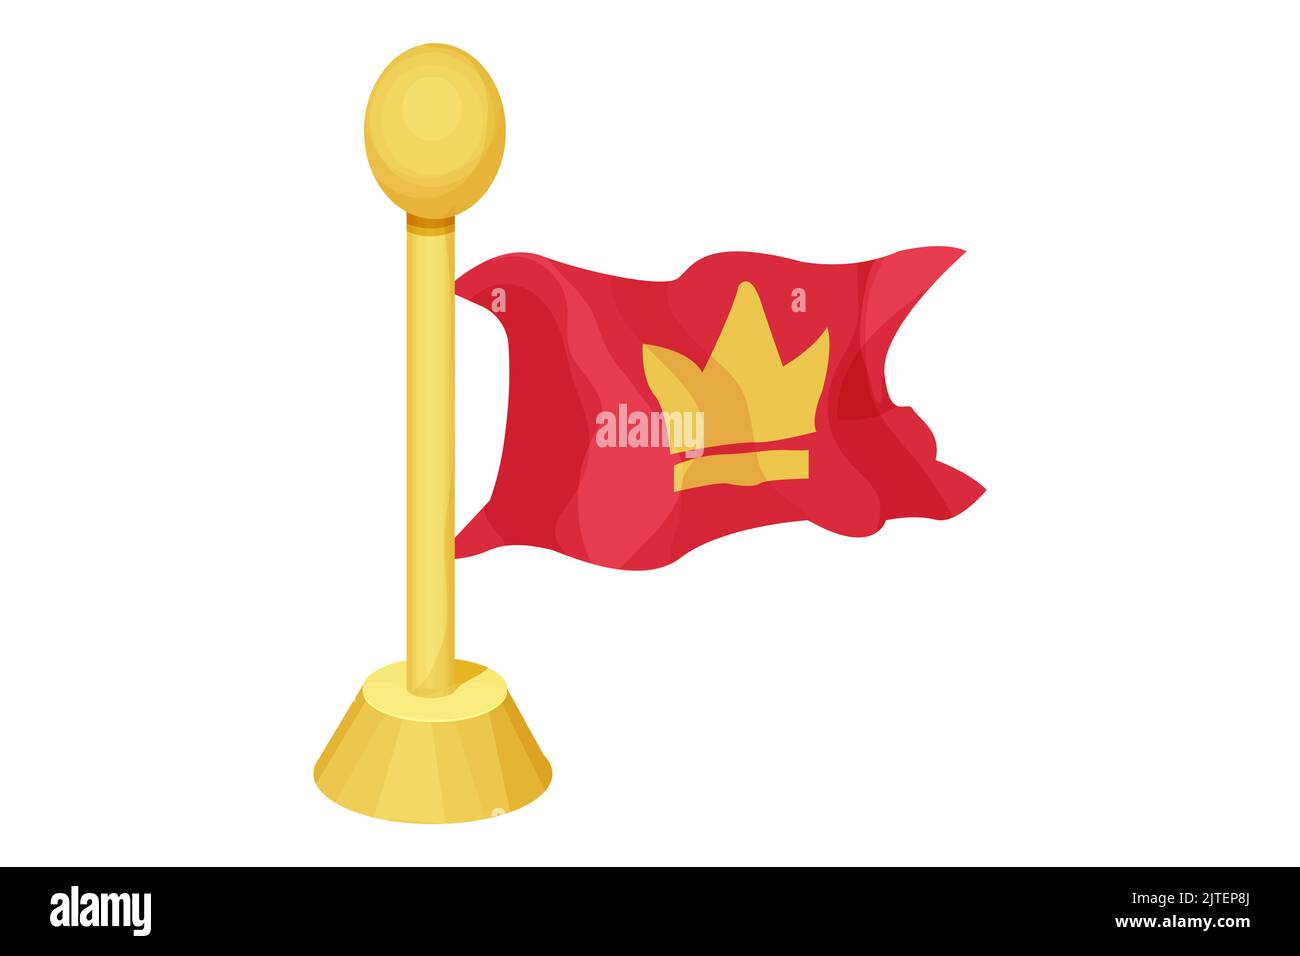 Rote hängende mittelalterliche Flagge mit goldener Krone im Cartoon-Stil auf dem Hintergrund isoliert. UI-Spiel Asset, heraldic Design-Element,. Vektorgrafik Stock Vektor